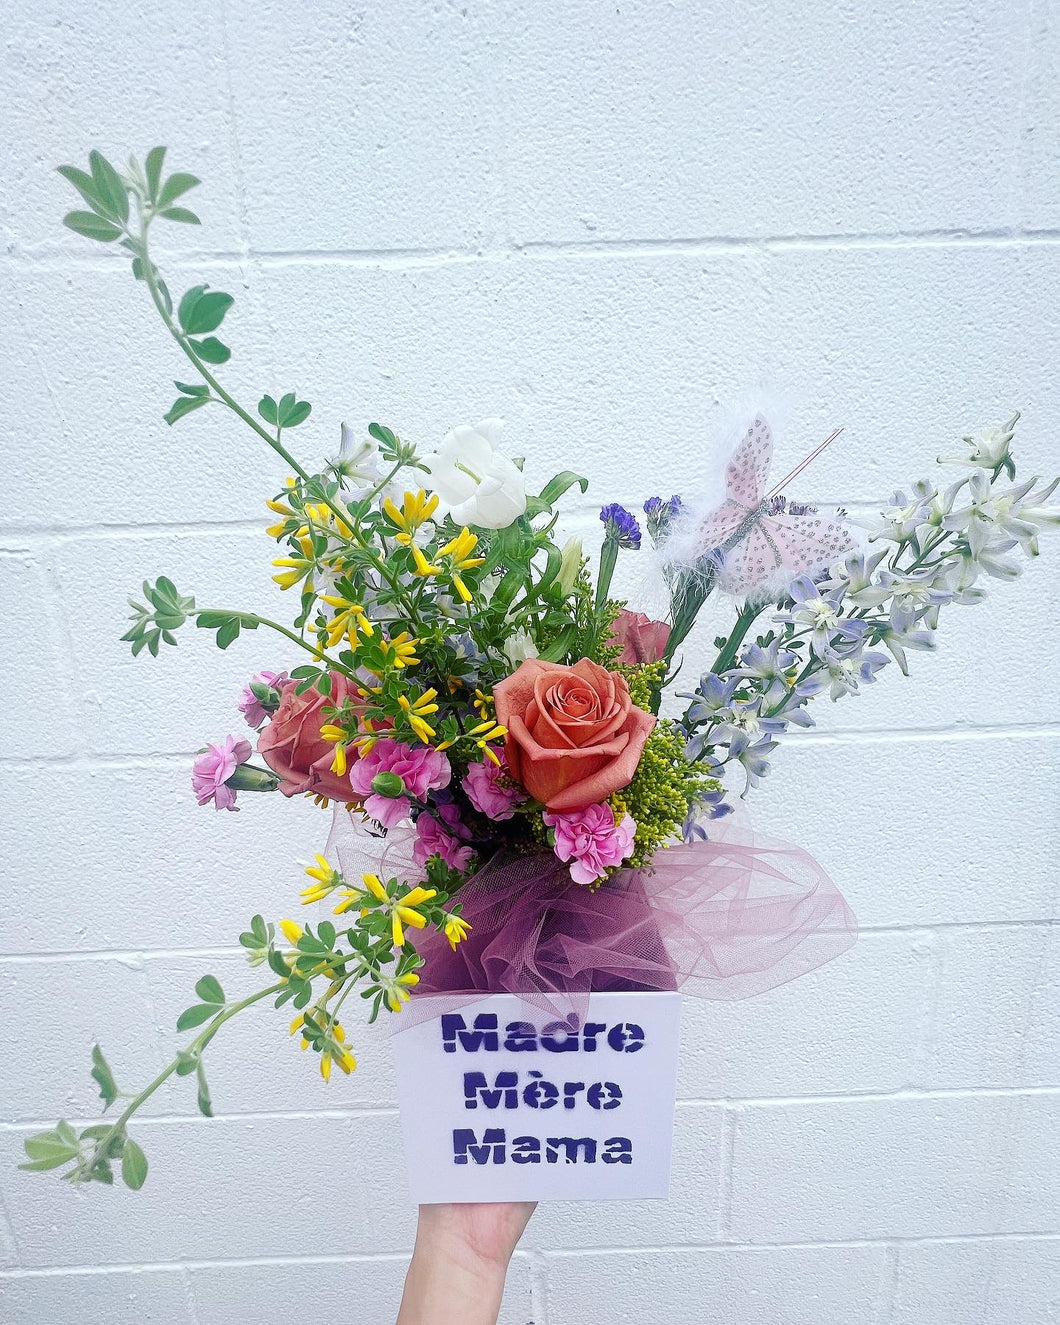 Madre Mère Mama Flower Arrangement